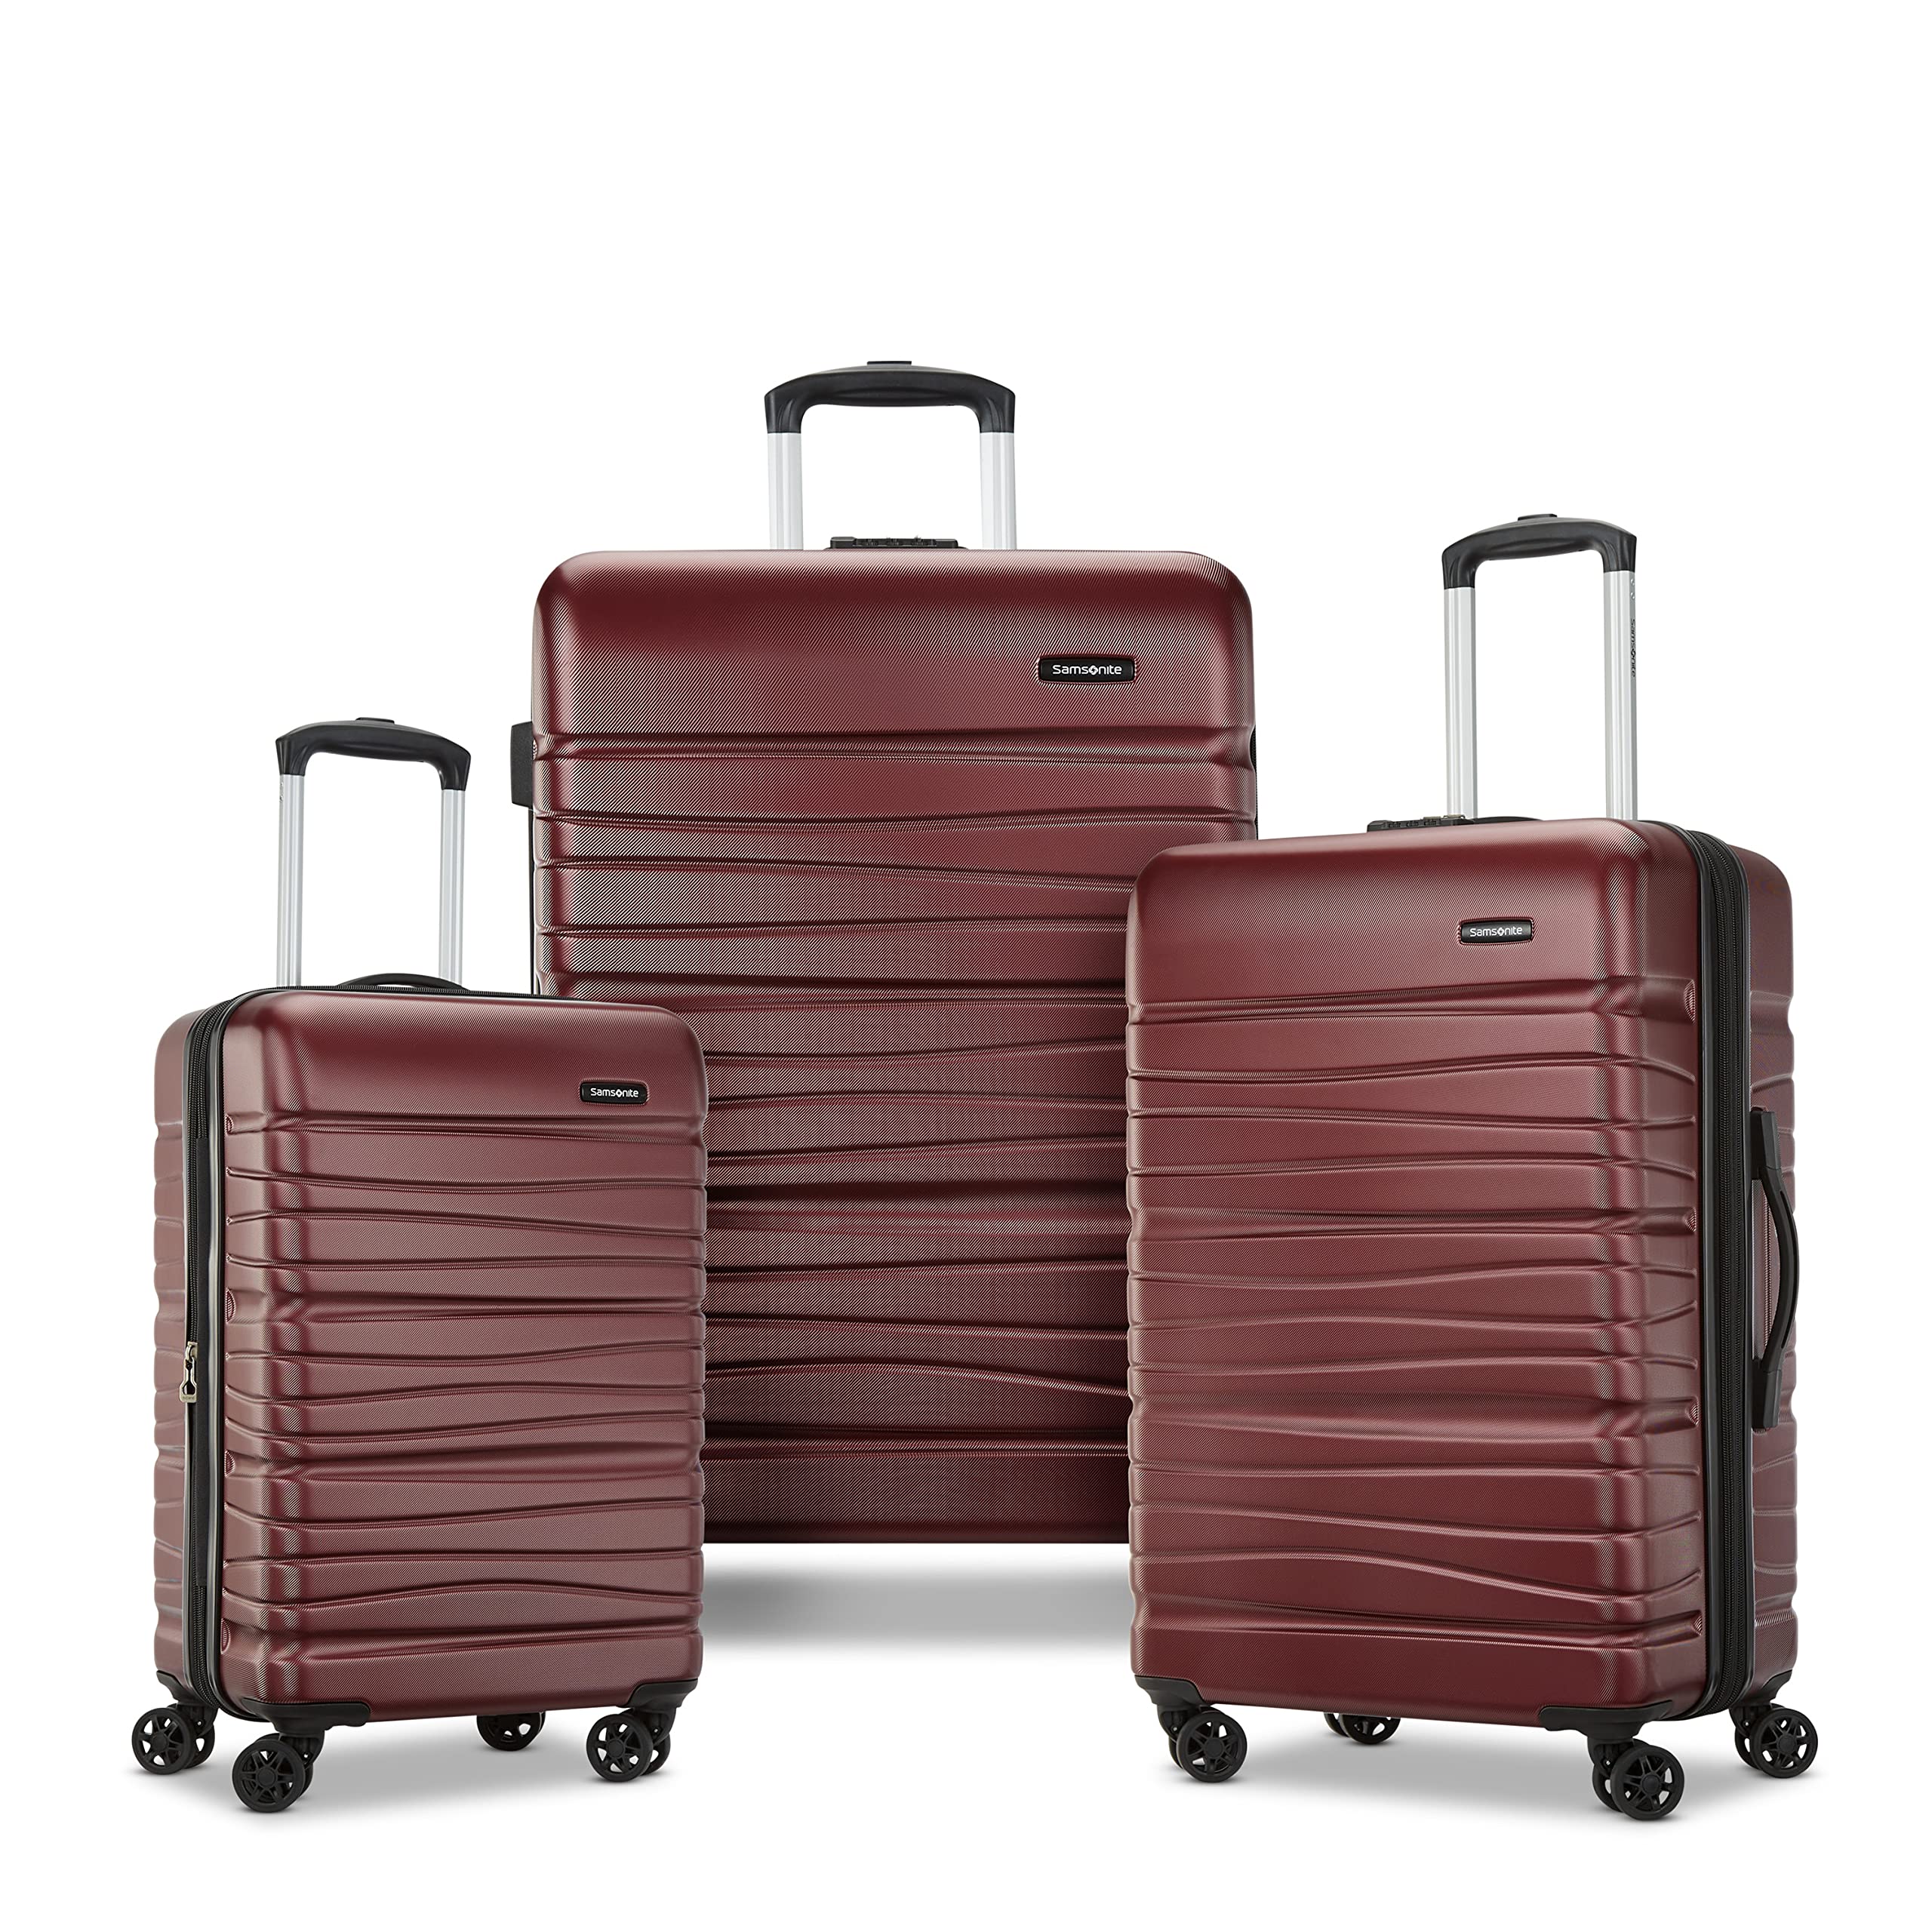 Evolve SE Hardside Expandable Spinner Luggage Luggage Online